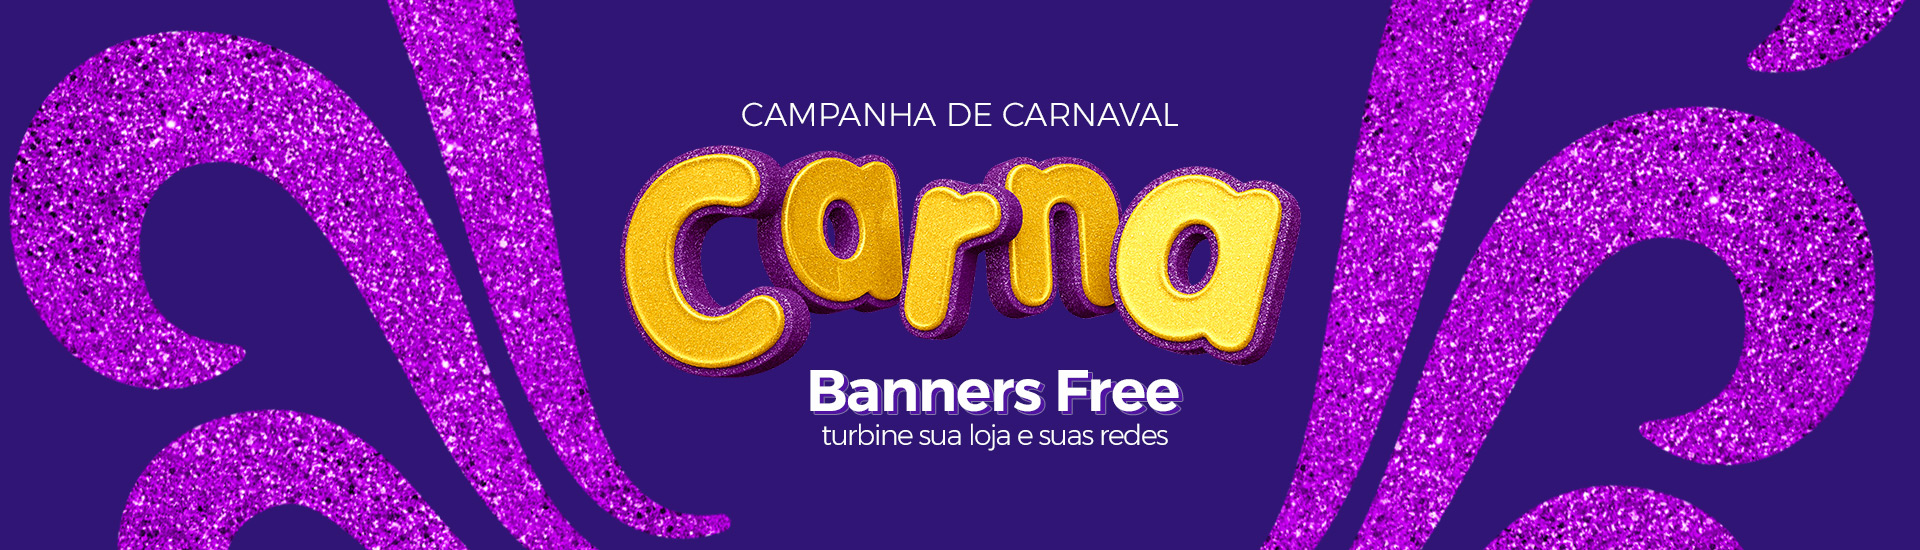 Banners de Carnaval